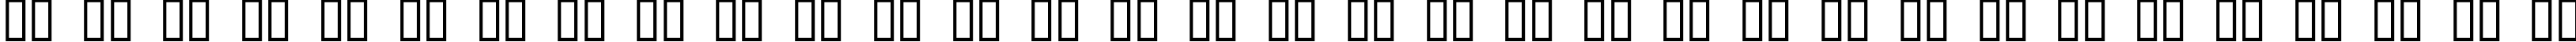 Пример написания русского алфавита шрифтом P22 Rodin Extras